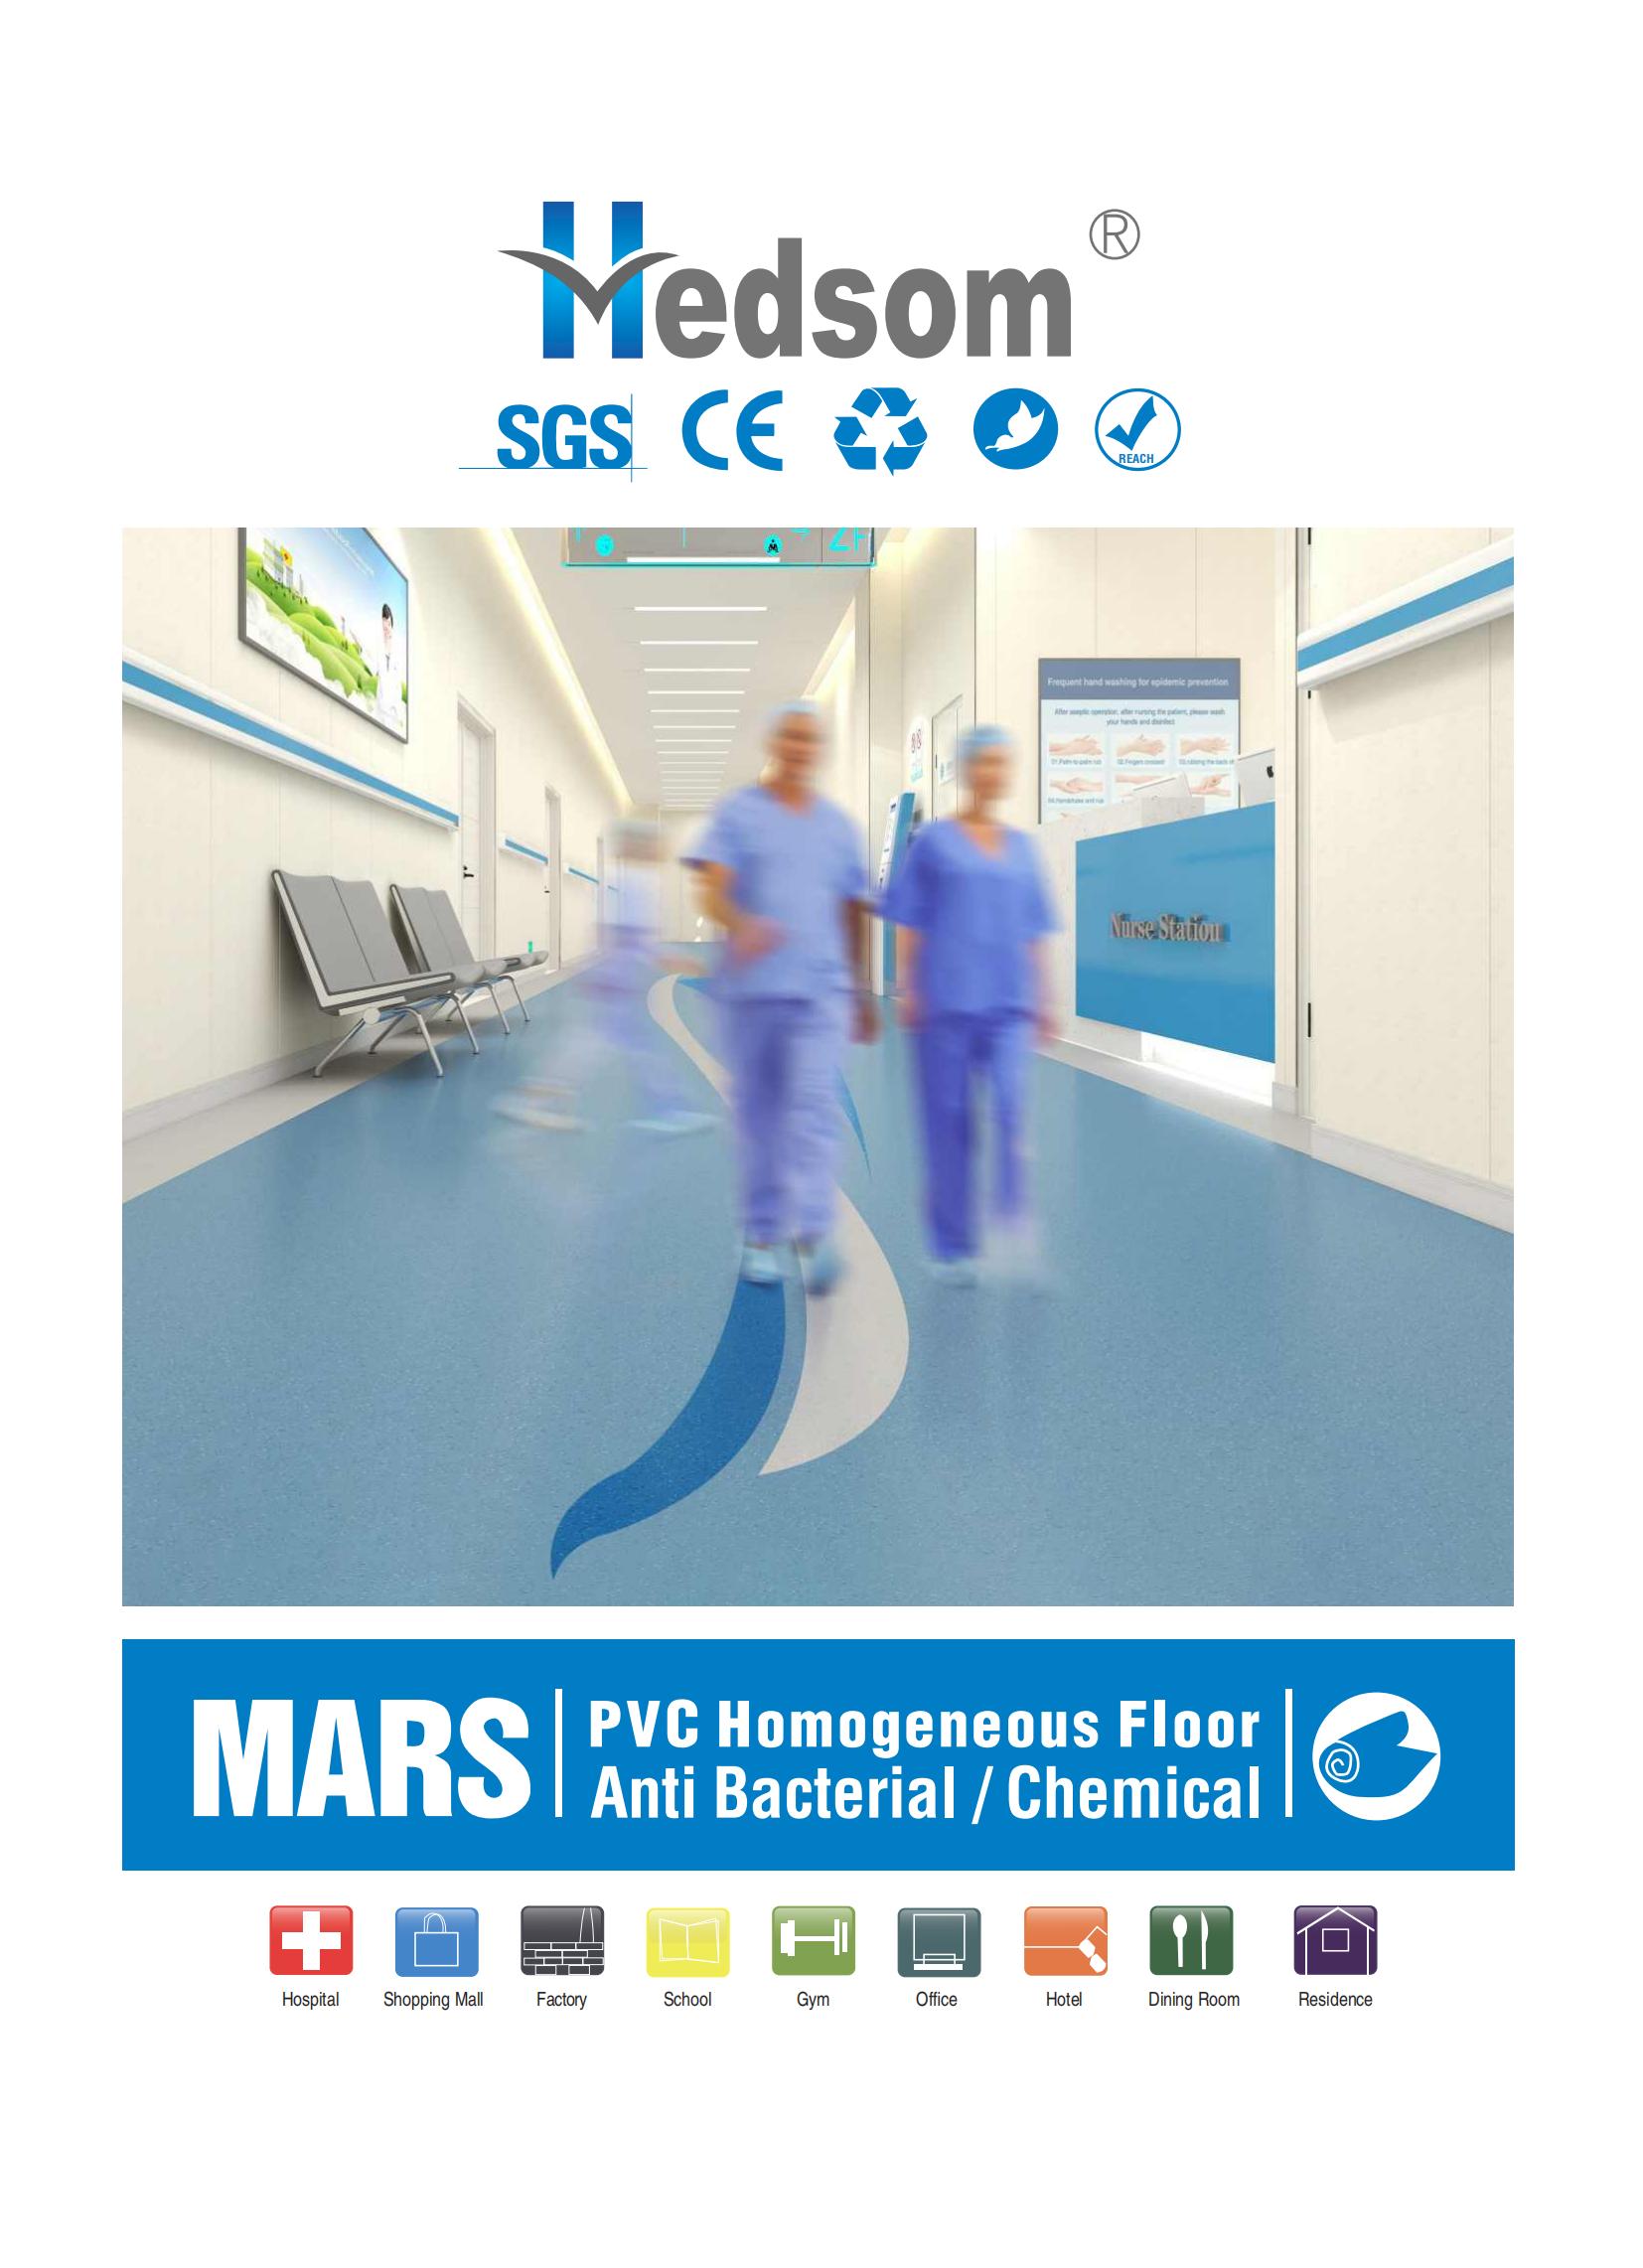 Hedsom PVC Anti bacterial homogeneous Flooring(Mars)-2022_00.jpg